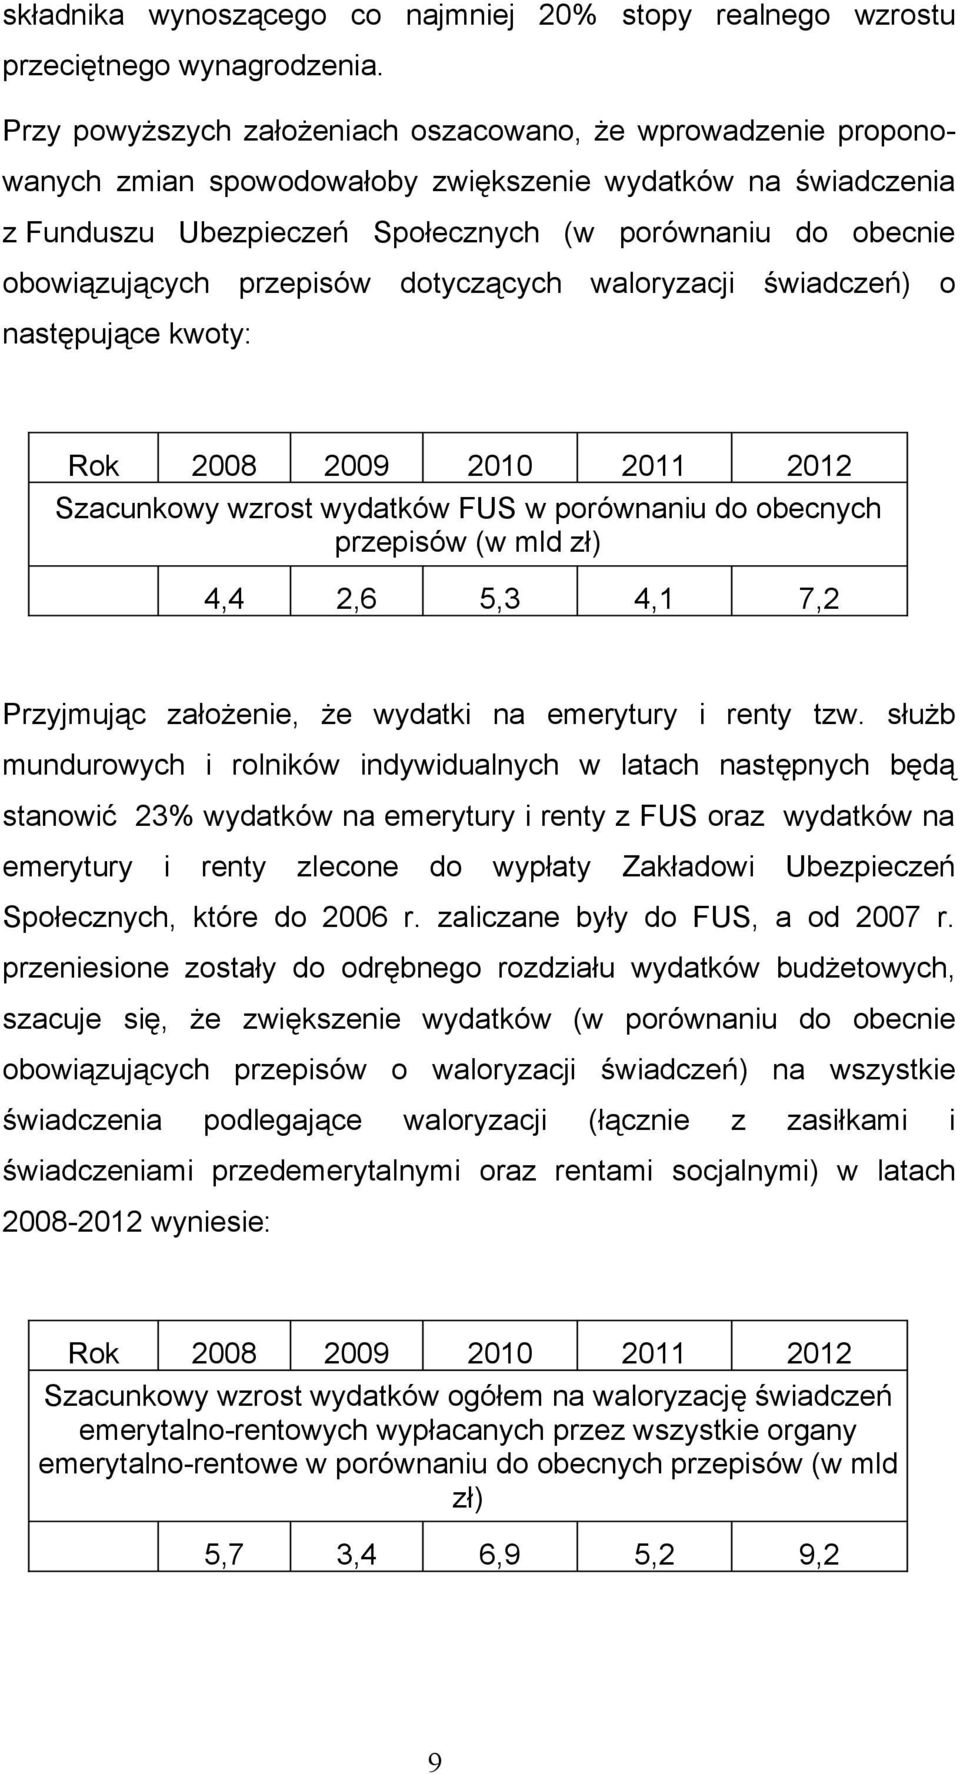 obowiązujących przepisów dotyczących waloryzacji świadczeń) o następujące kwoty: Rok 2008 2009 2010 2011 2012 Szacunkowy wzrost wydatków FUS w porównaniu do obecnych przepisów (w mld zł) 4,4 2,6 5,3